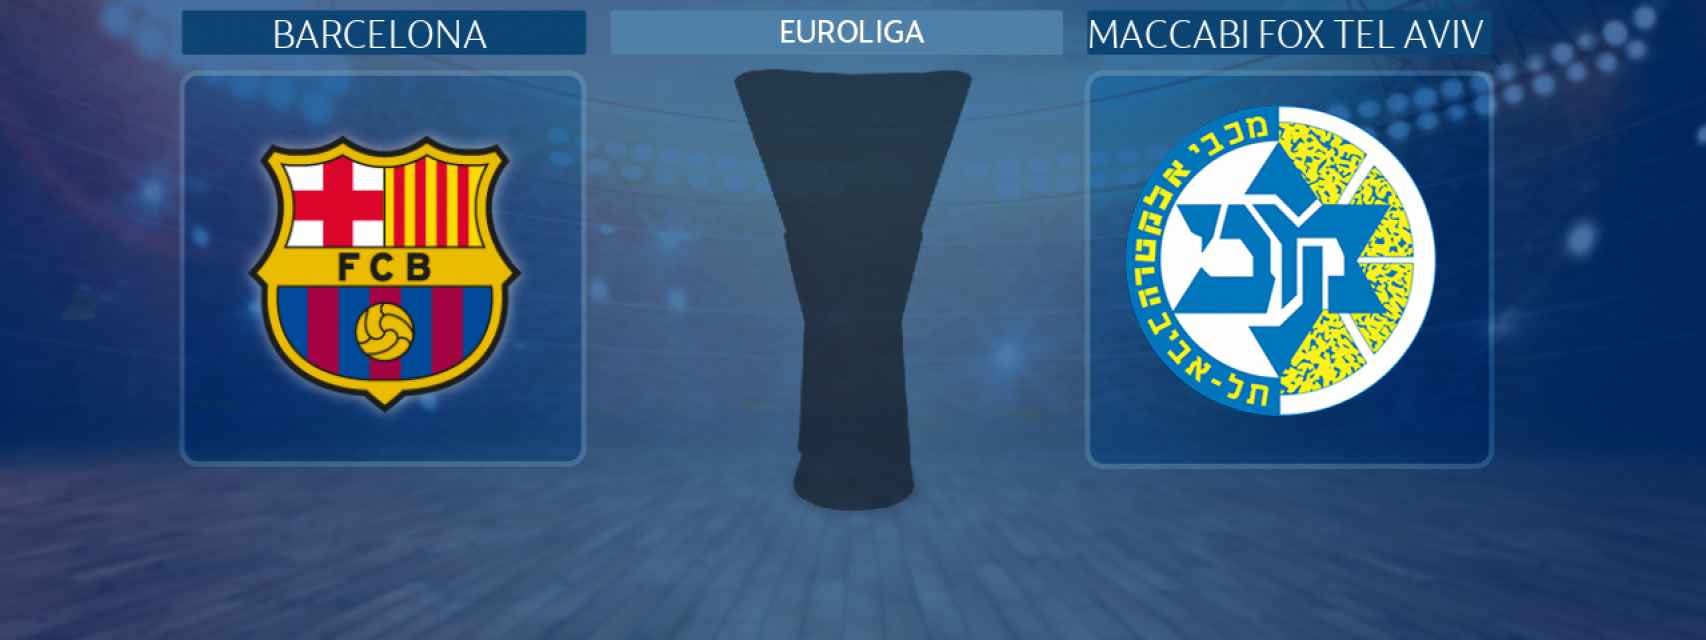 Barcelona - Maccabi Fox Tel Aviv, partido de la Euroliga